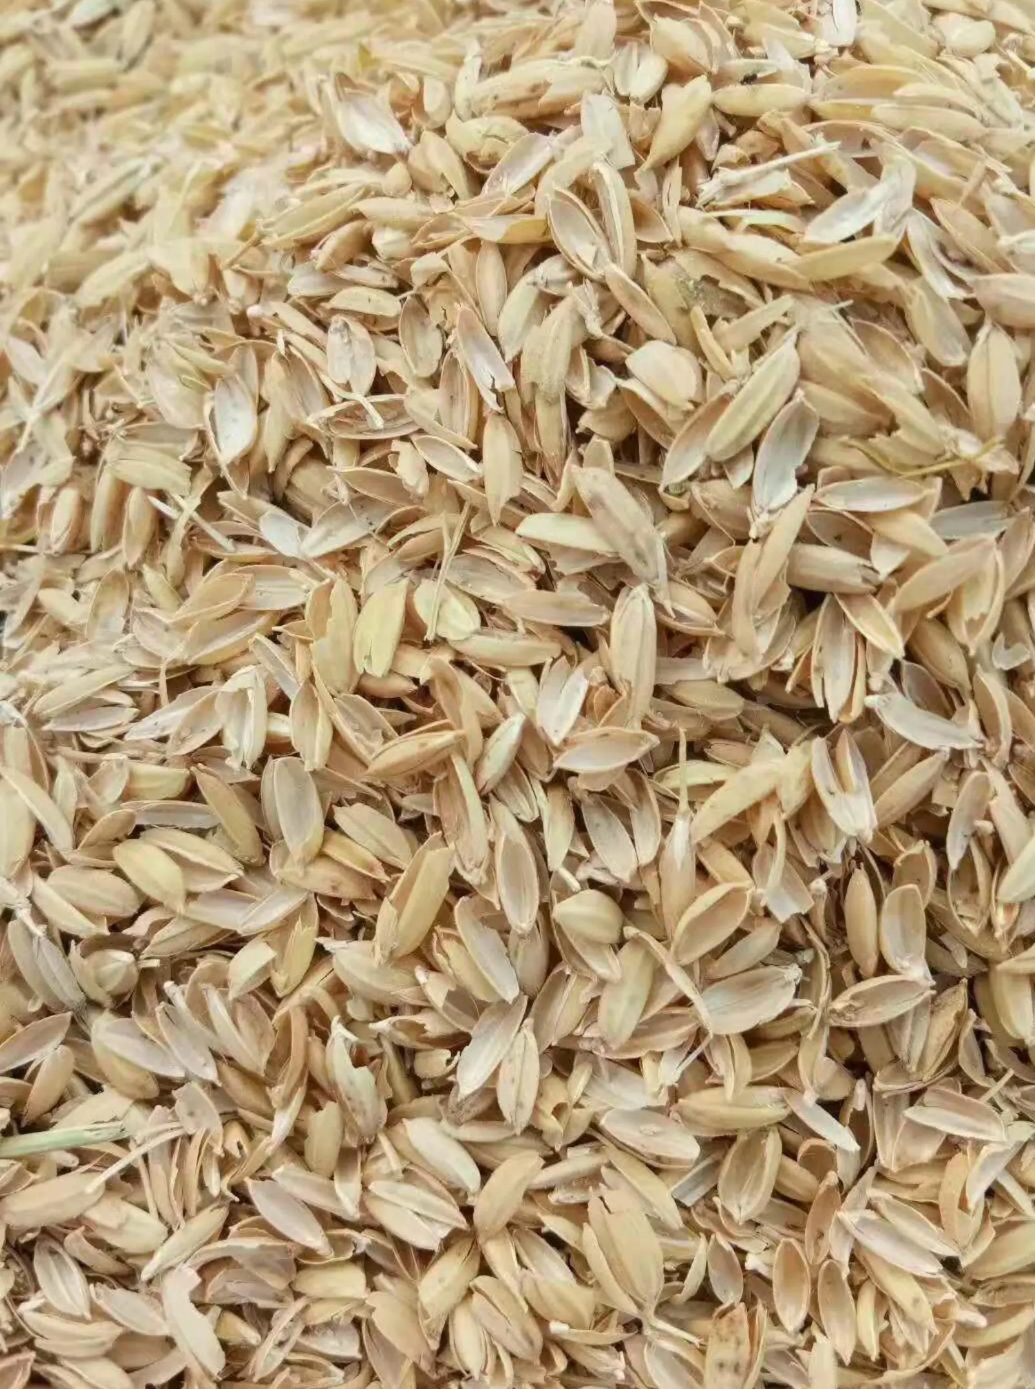 [稻壳批发] 稻壳(原大米圆稻壳)价格600元/吨 - 惠农网